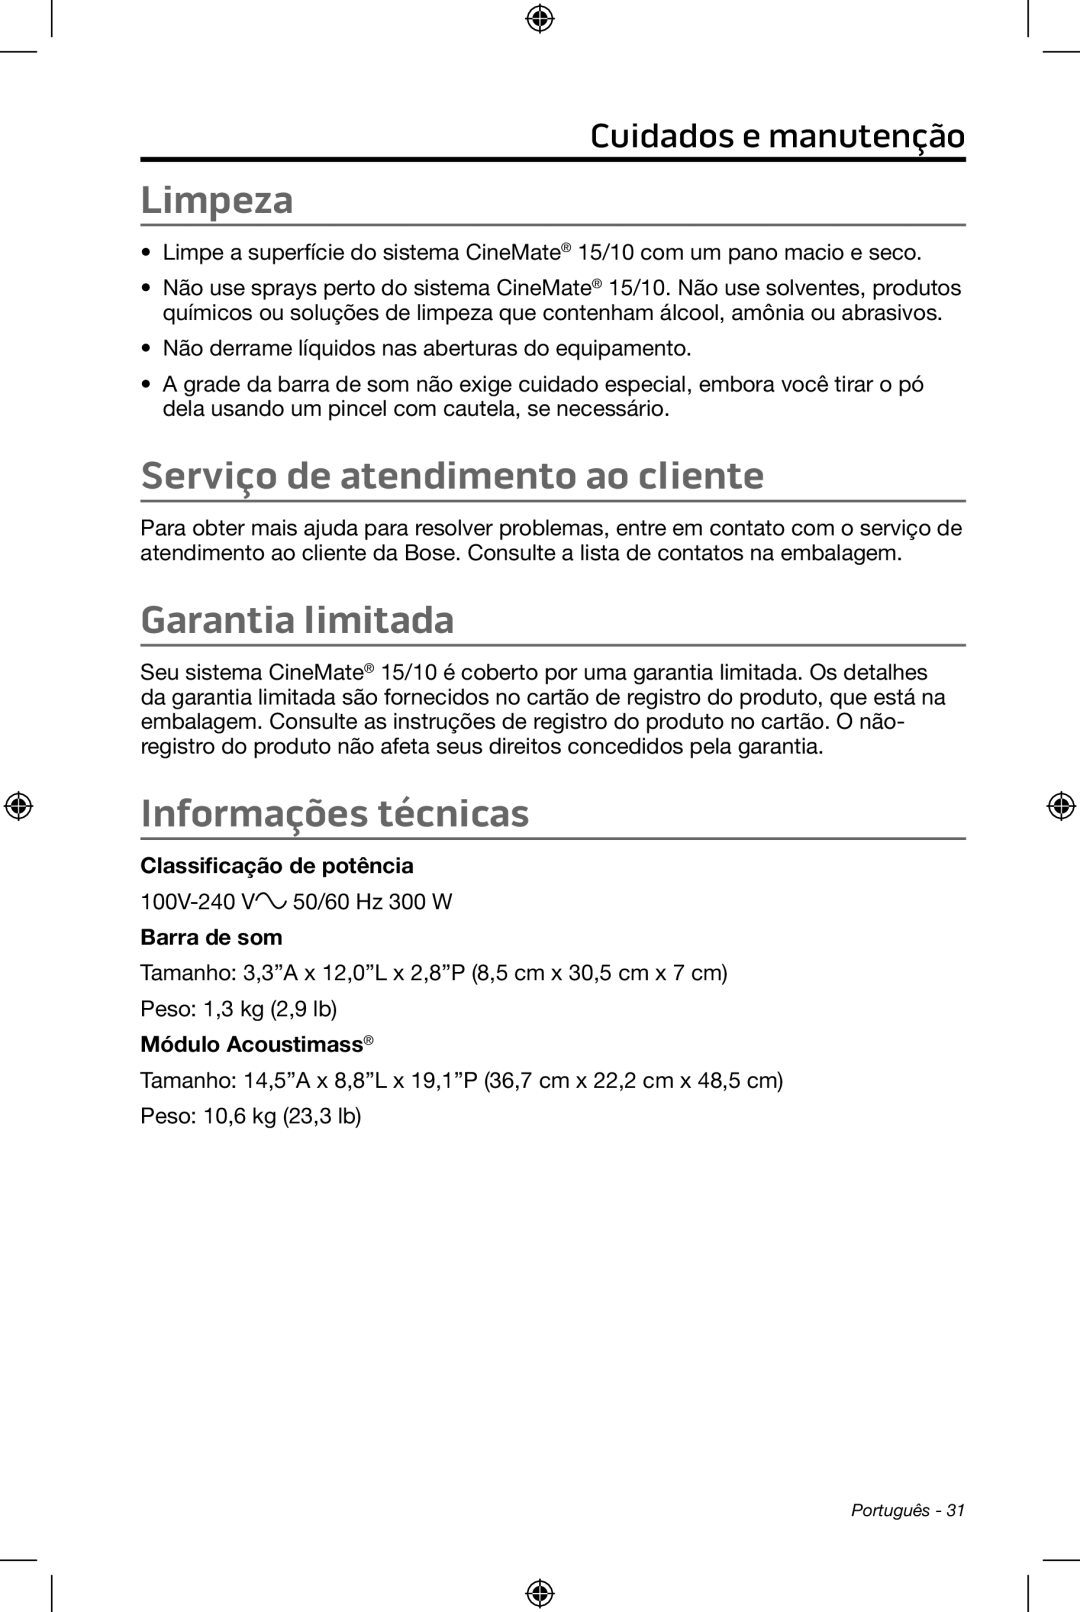 Bose CineMate 15/10 manual Limpeza, Serviço de atendimento ao cliente, Garantia limitada, Informações técnicas 